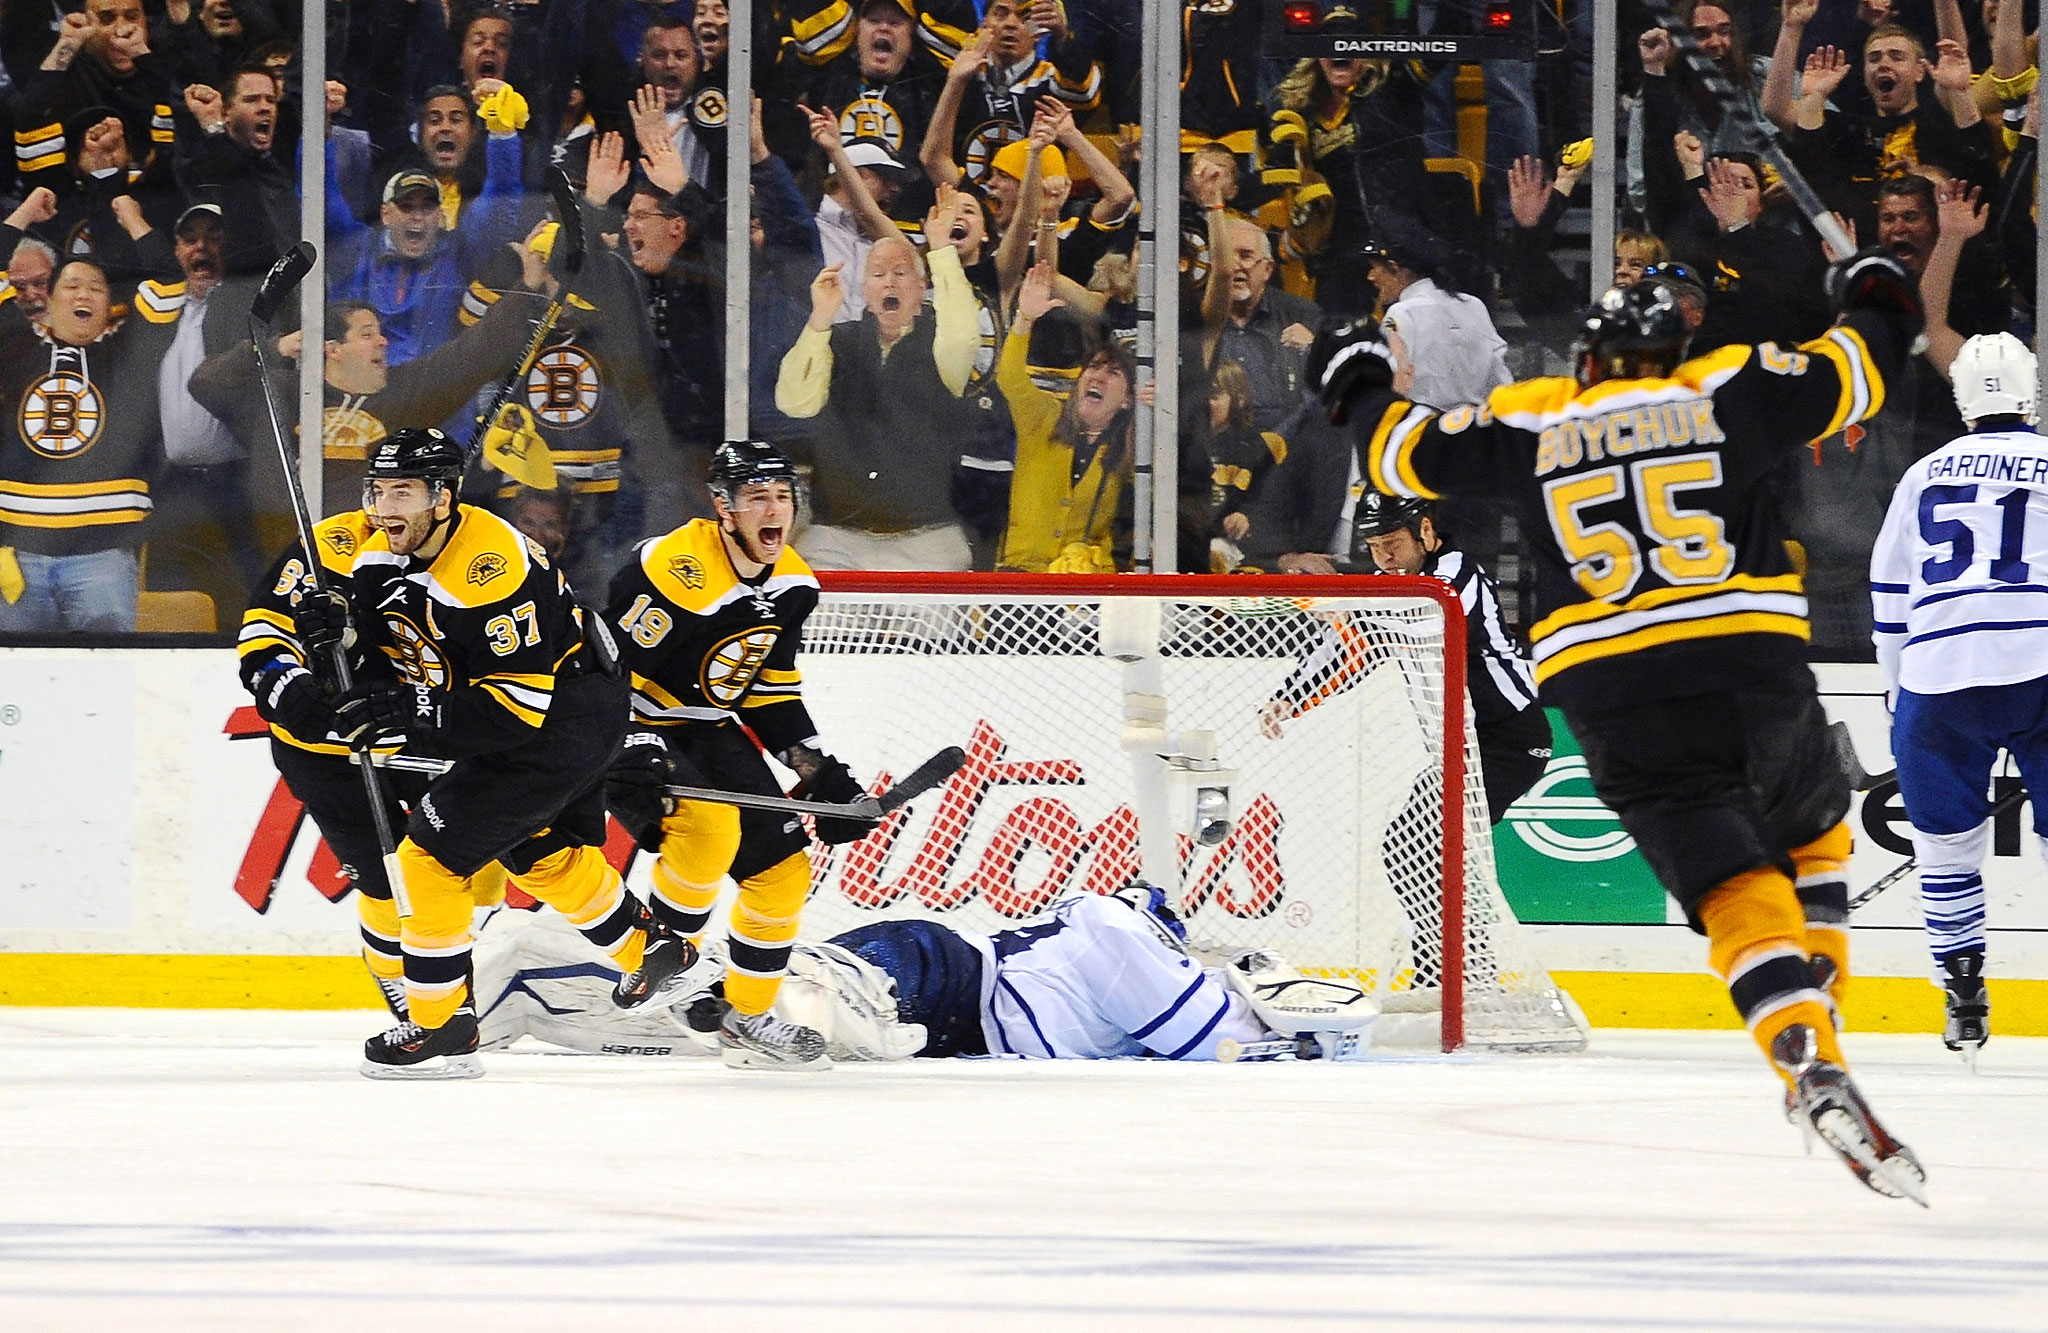 Game 7 Bruins 5, Maple Leafs 4 (OT) Boston Bruins' 2013 Playoff Run